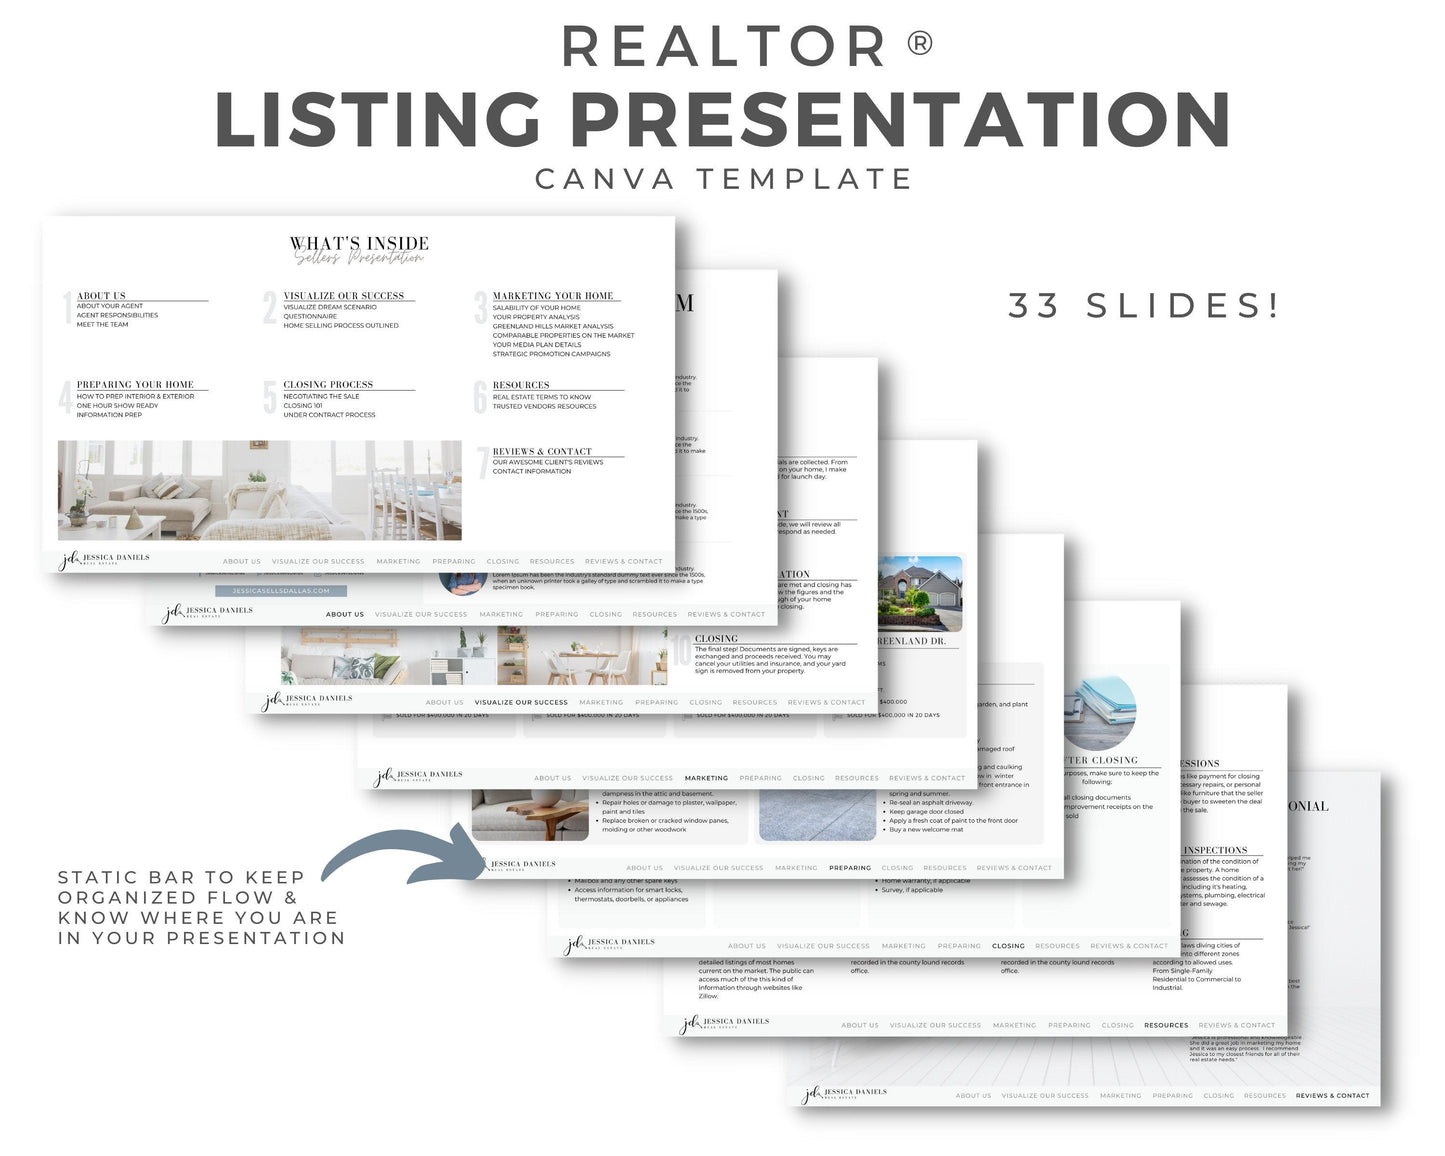 Real Estate Listing Presentation, Real Estate Marketing, Printable Seller Guide, Realtor Digital Listing Presentation, Canva, Download